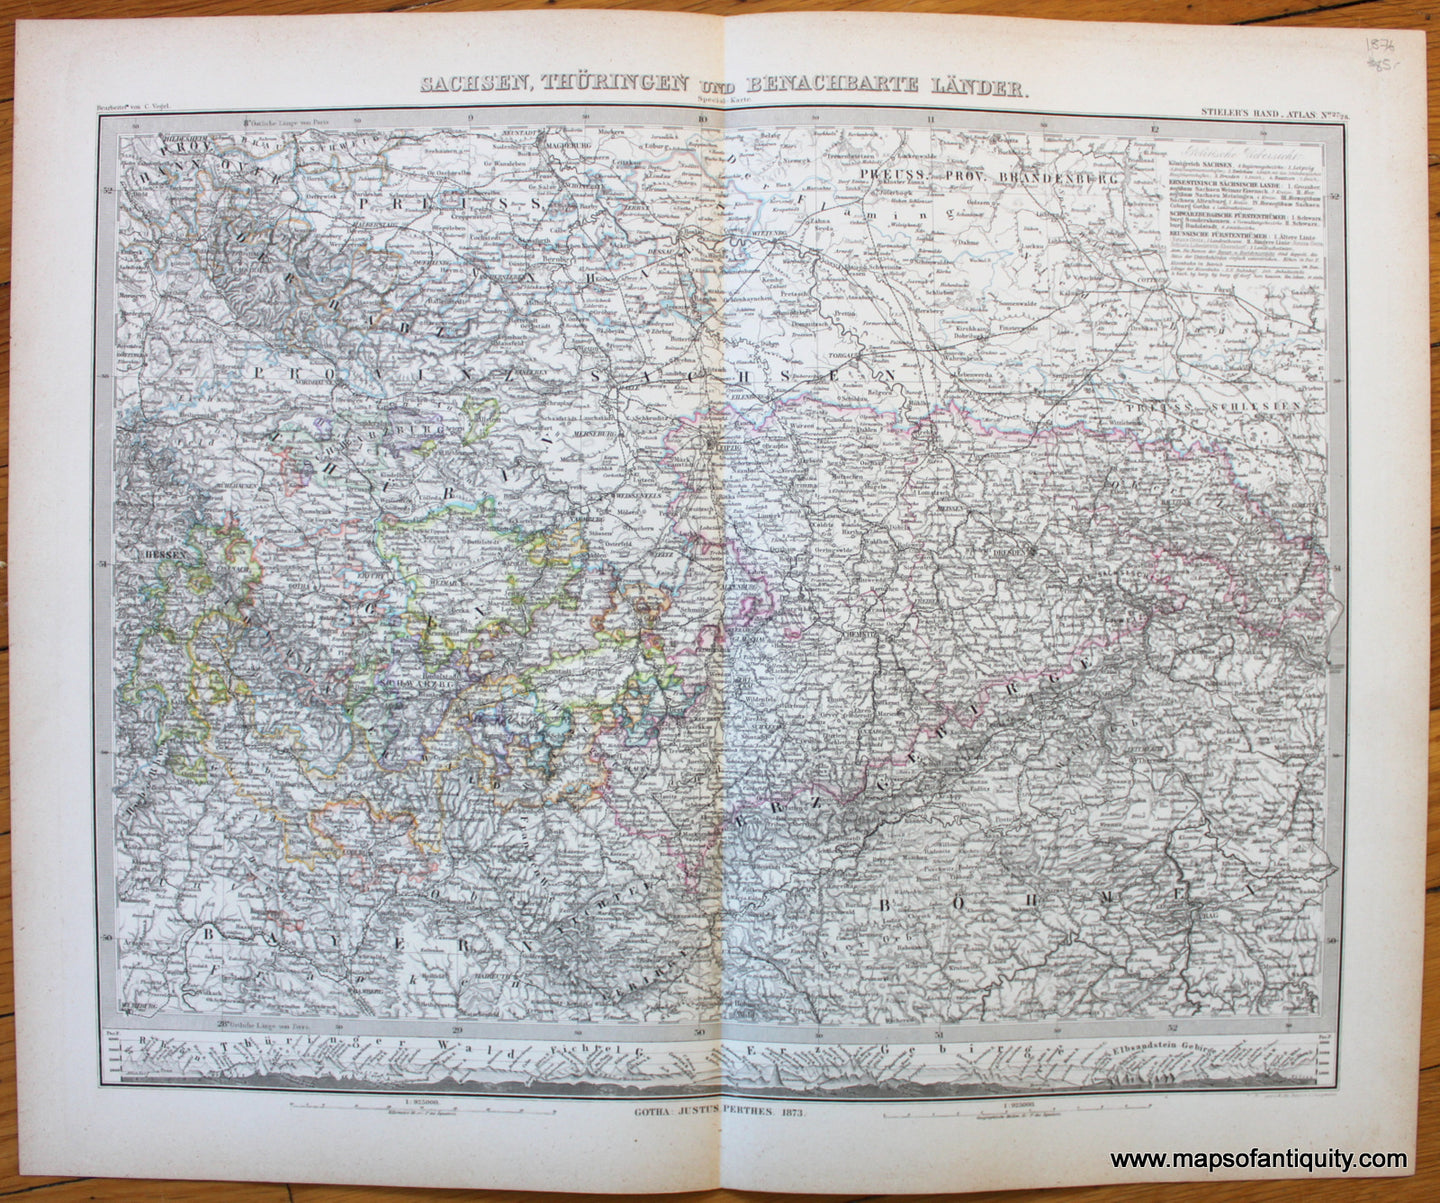 Antique-Map-Deutschland-Europe-Germany-Czechia-Sachsen-Thuringen-Benachbarte-Lander-Stieler-1876-1870s-1800s-19th-century-Maps-of-Antiquity